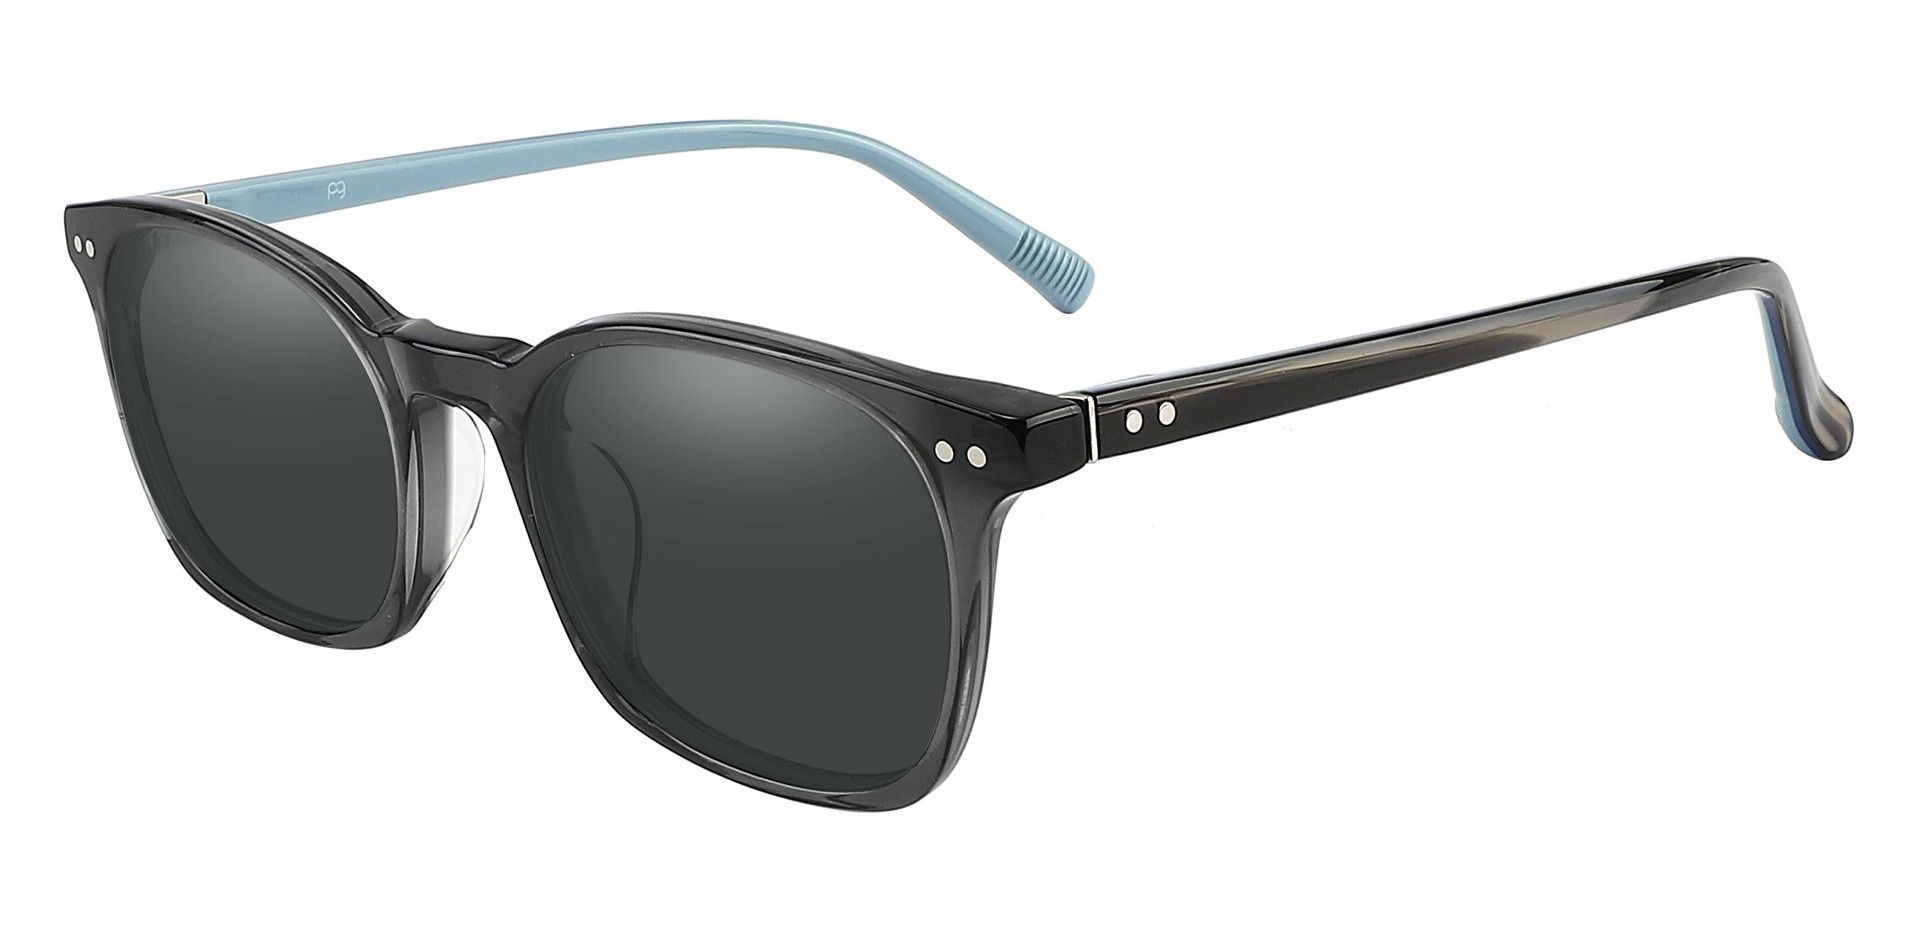 Alonzo Square Prescription Sunglasses - Gray Frame With Gray Lenses